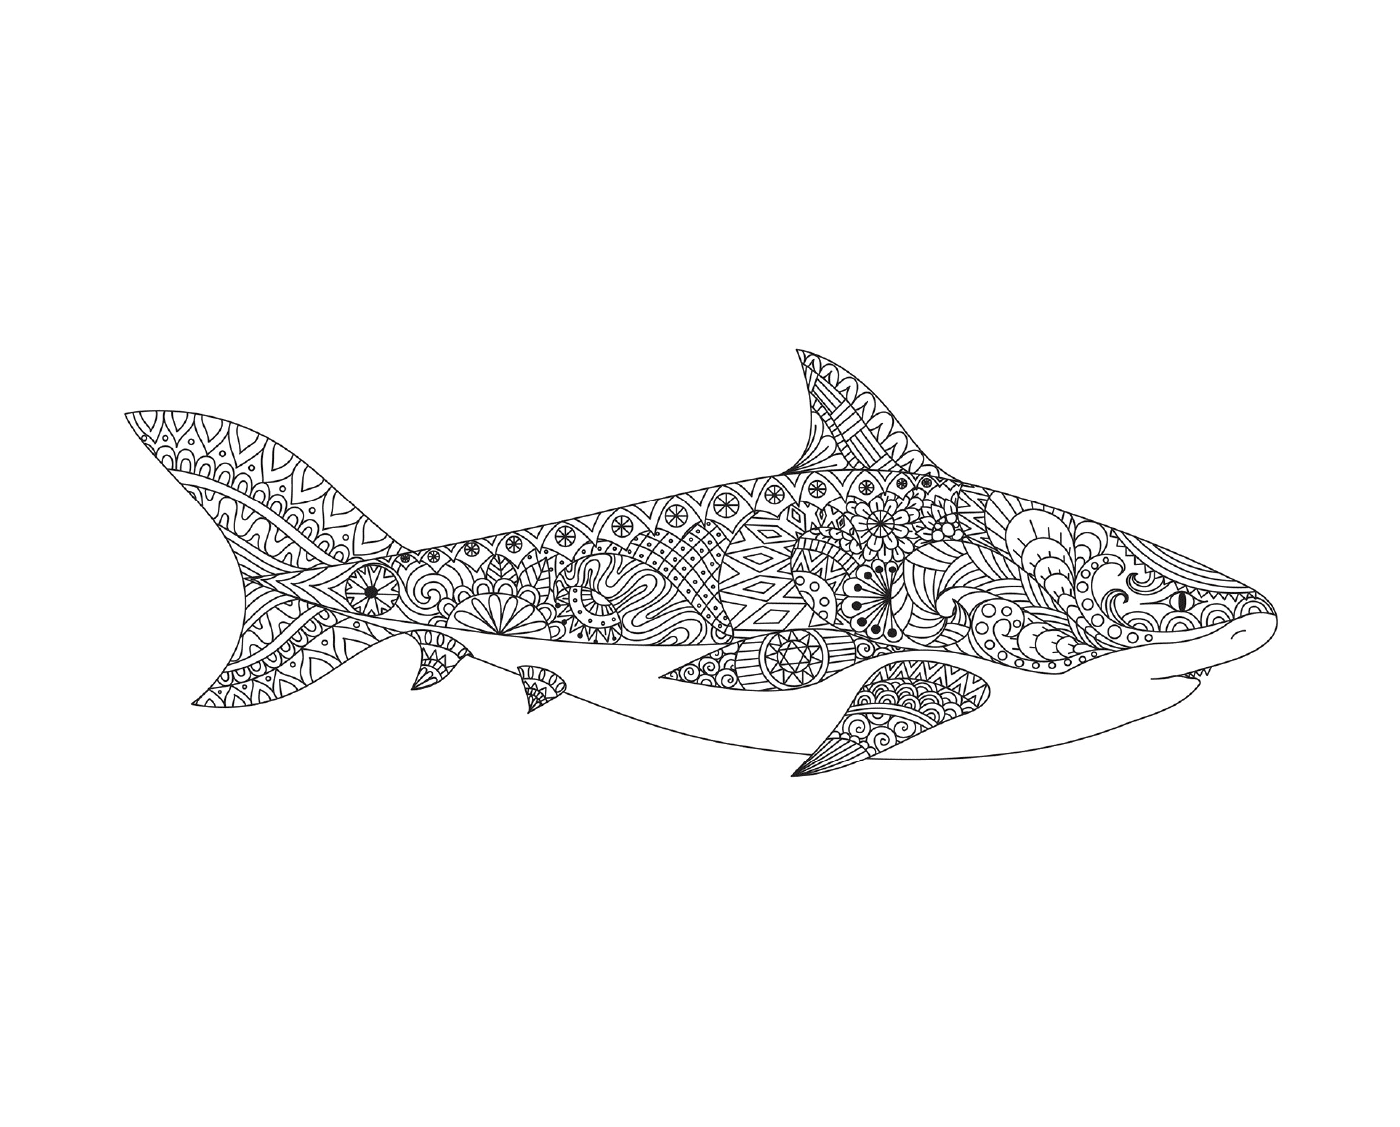  una rappresentazione tatuata di uno squalo adulto con bocca aperta 